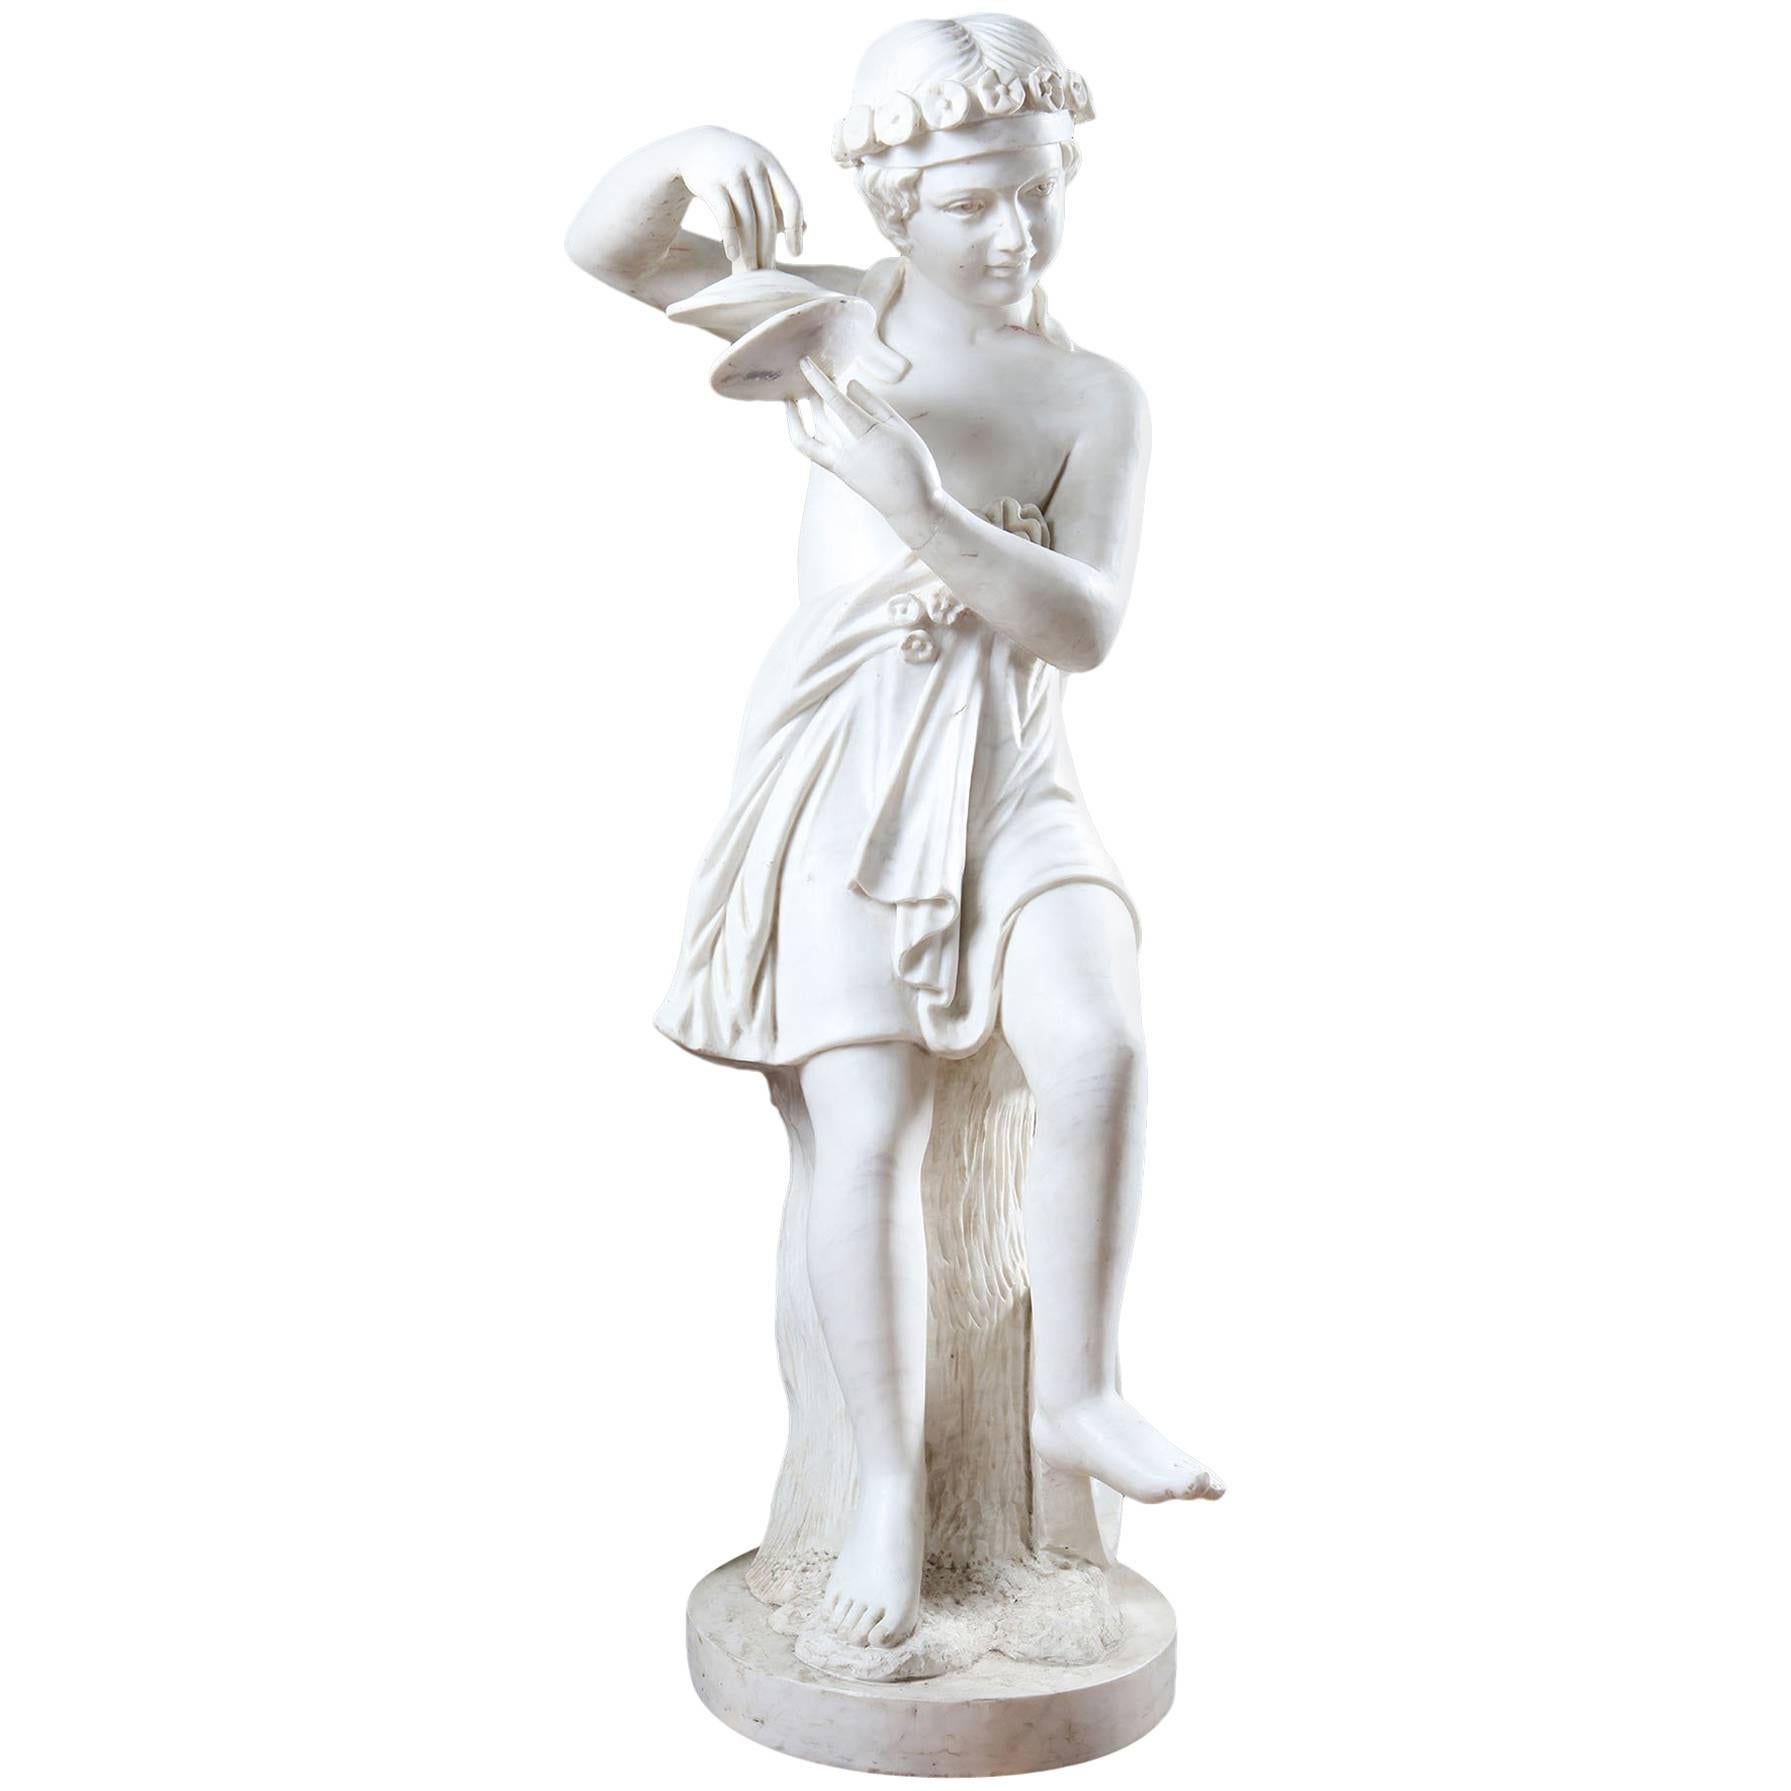 Statue aus Bildhauermarmor eines Kindes, das Musik verkörpert